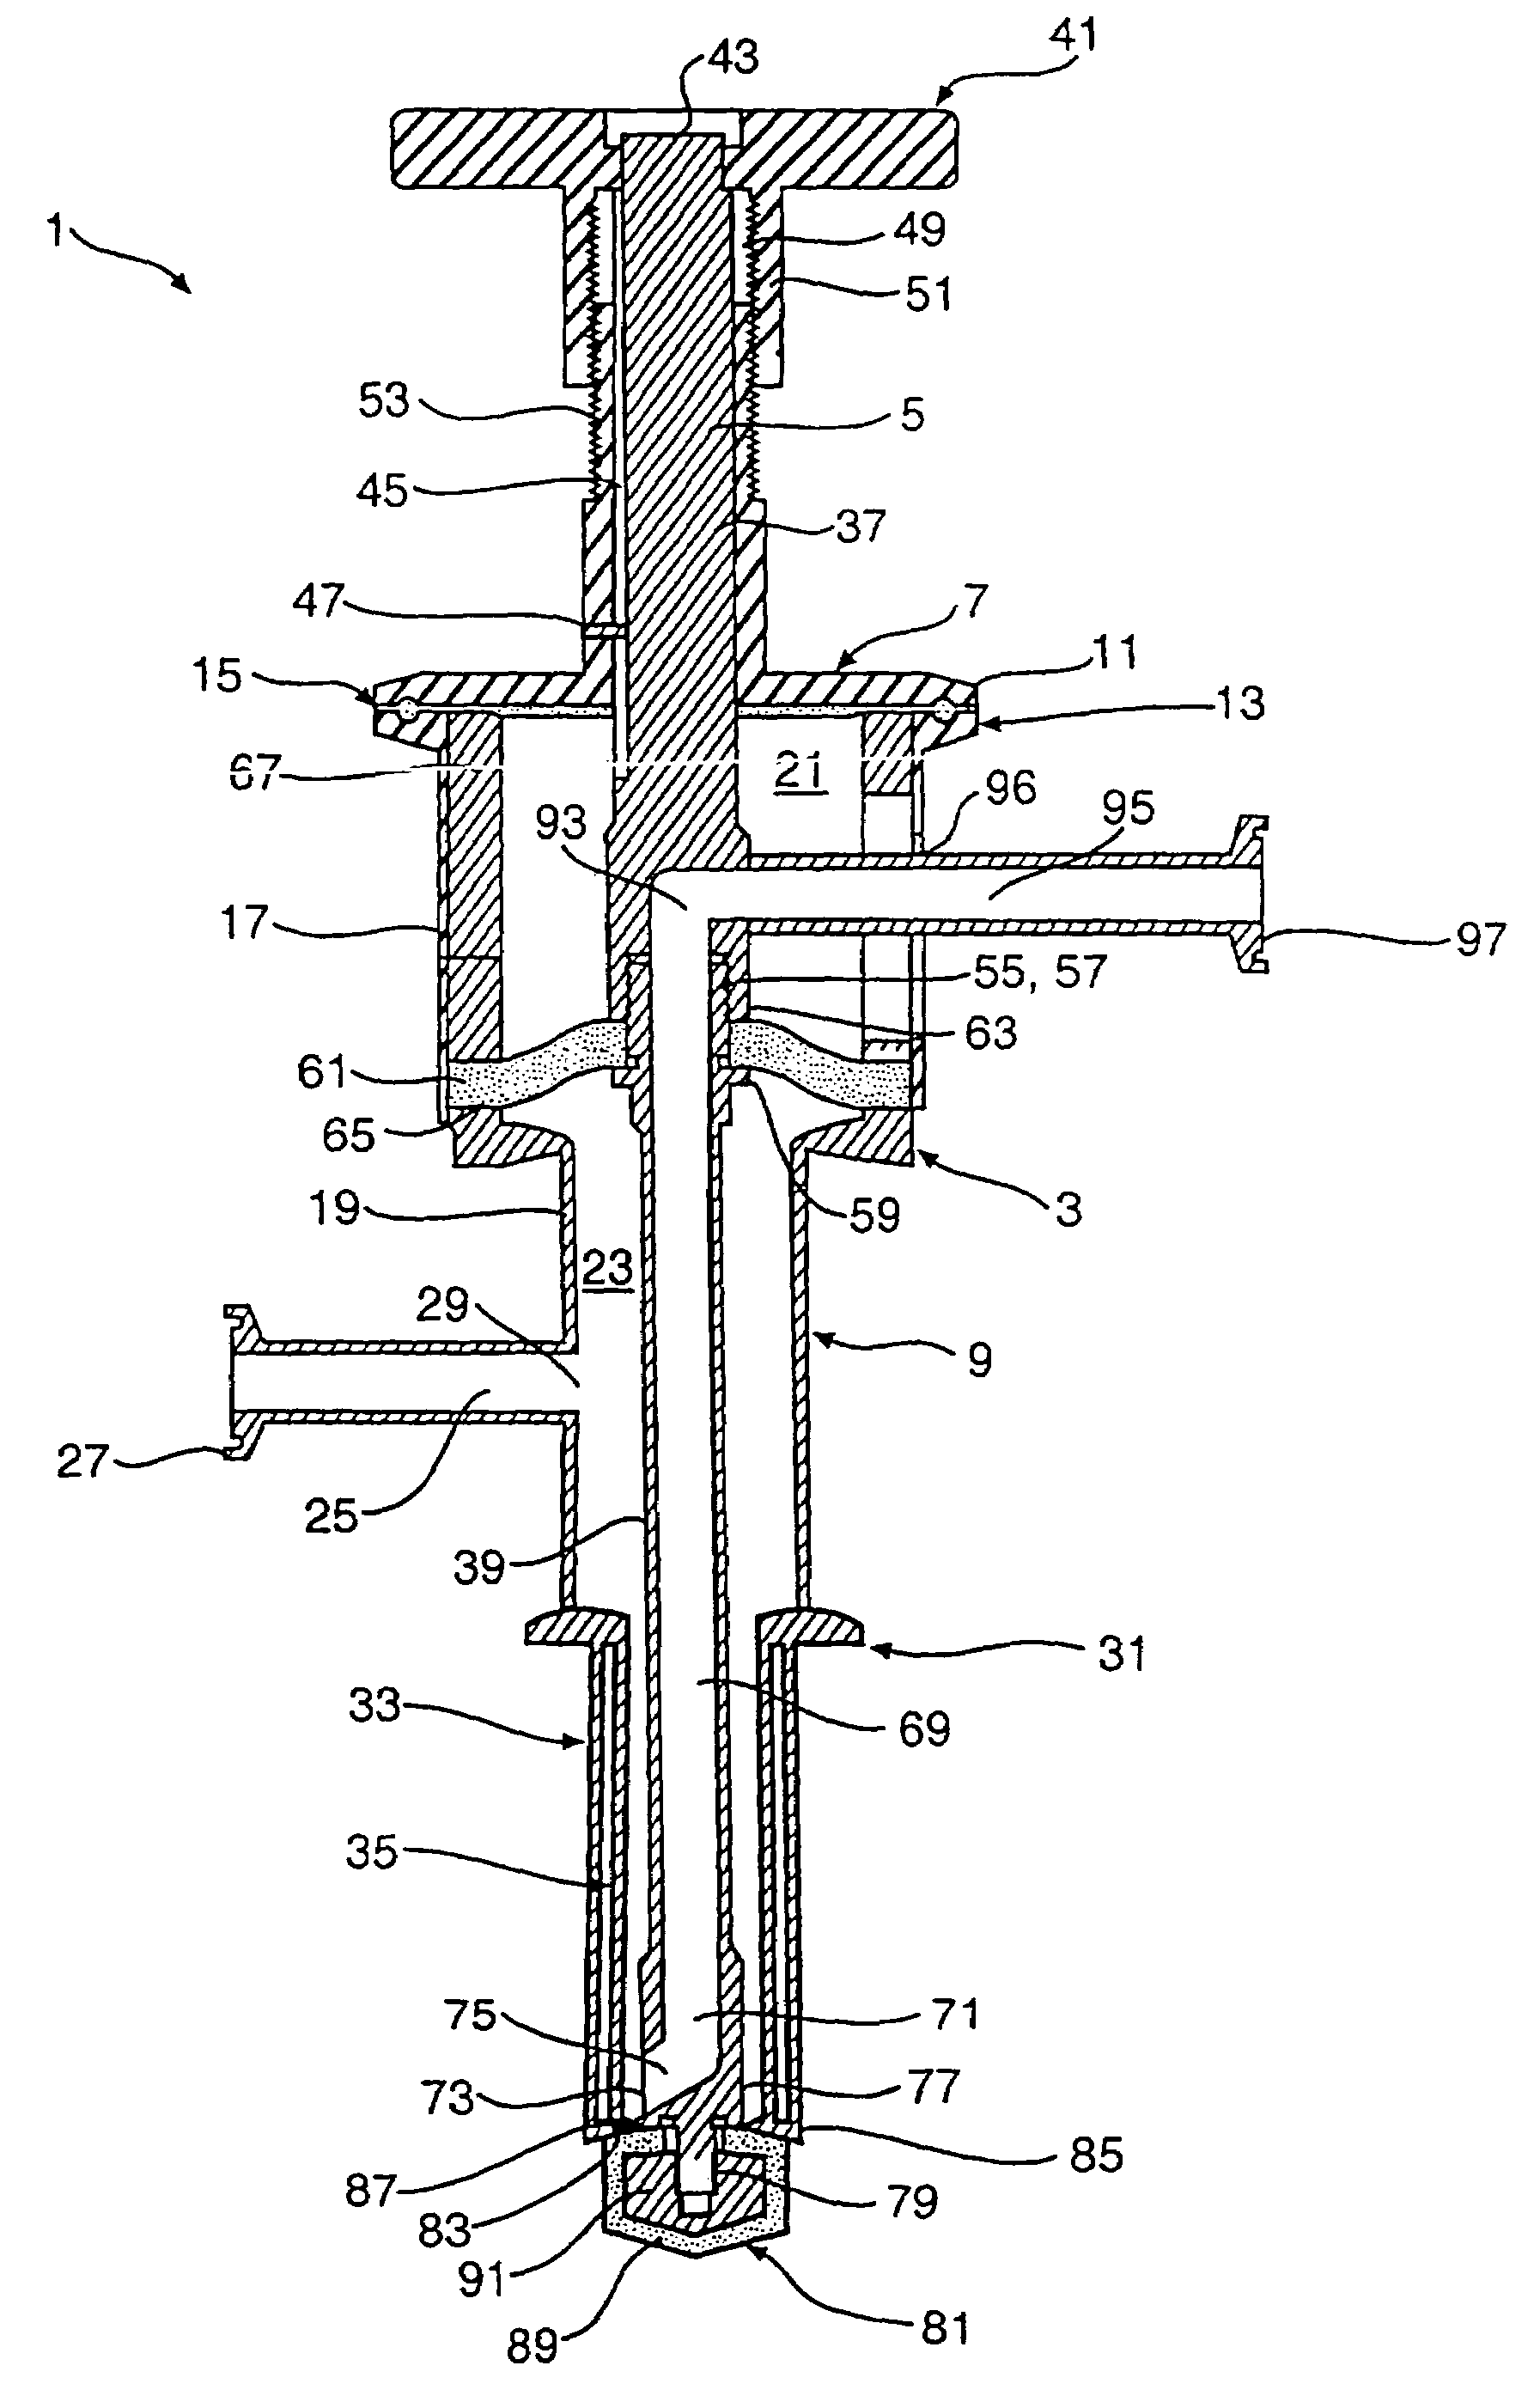 Dip tube valve assembly